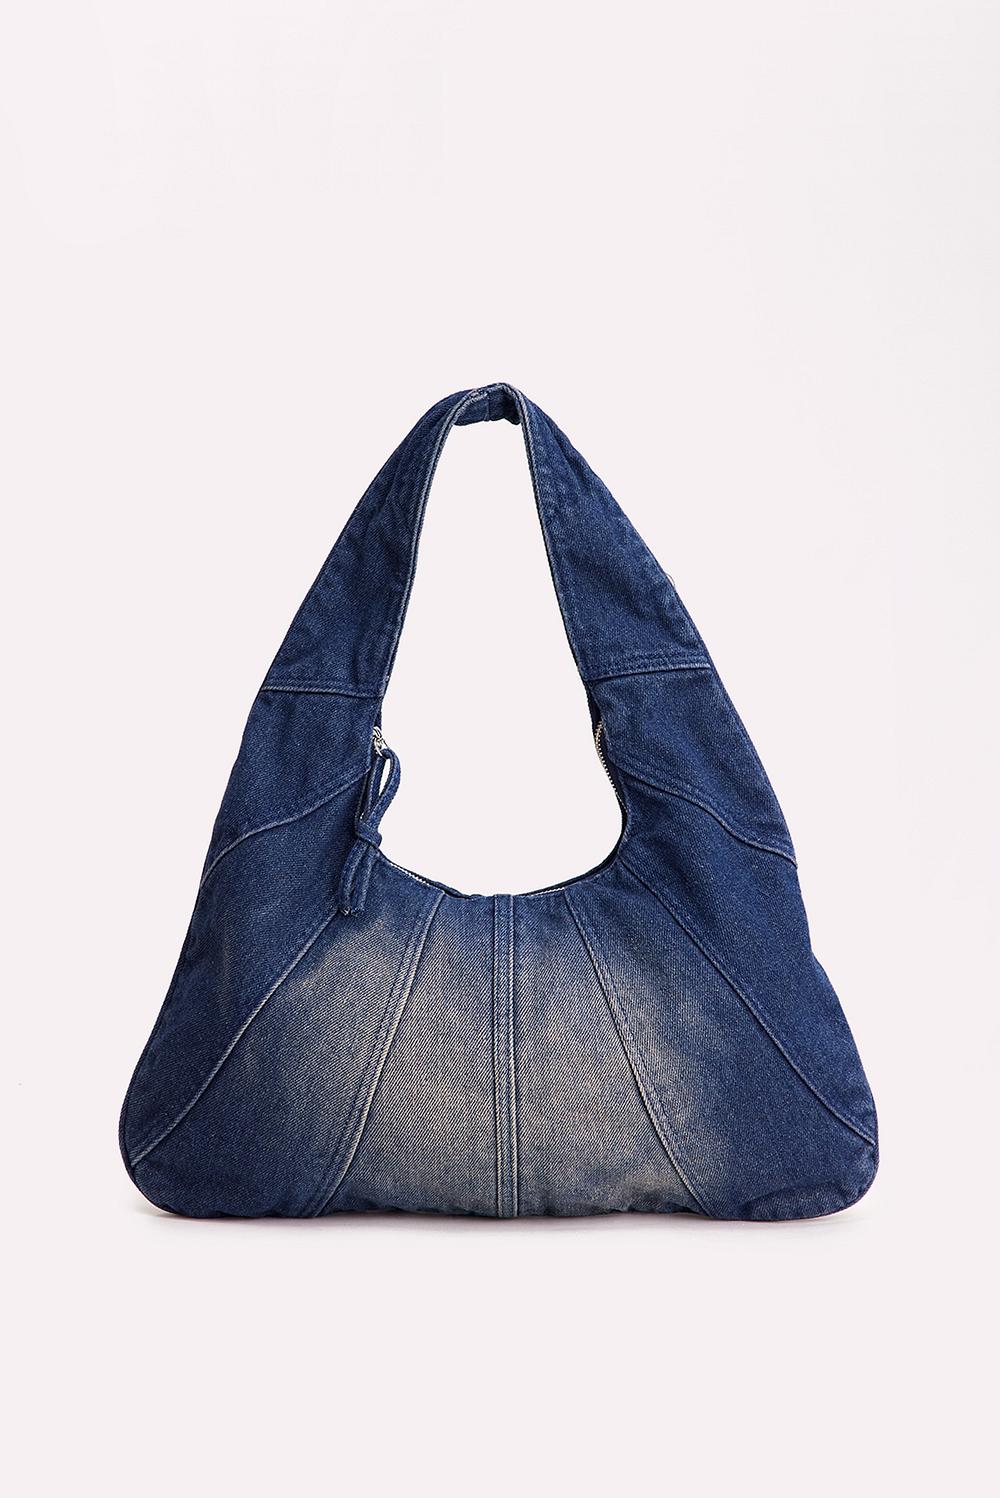 Light blue shoulder bag